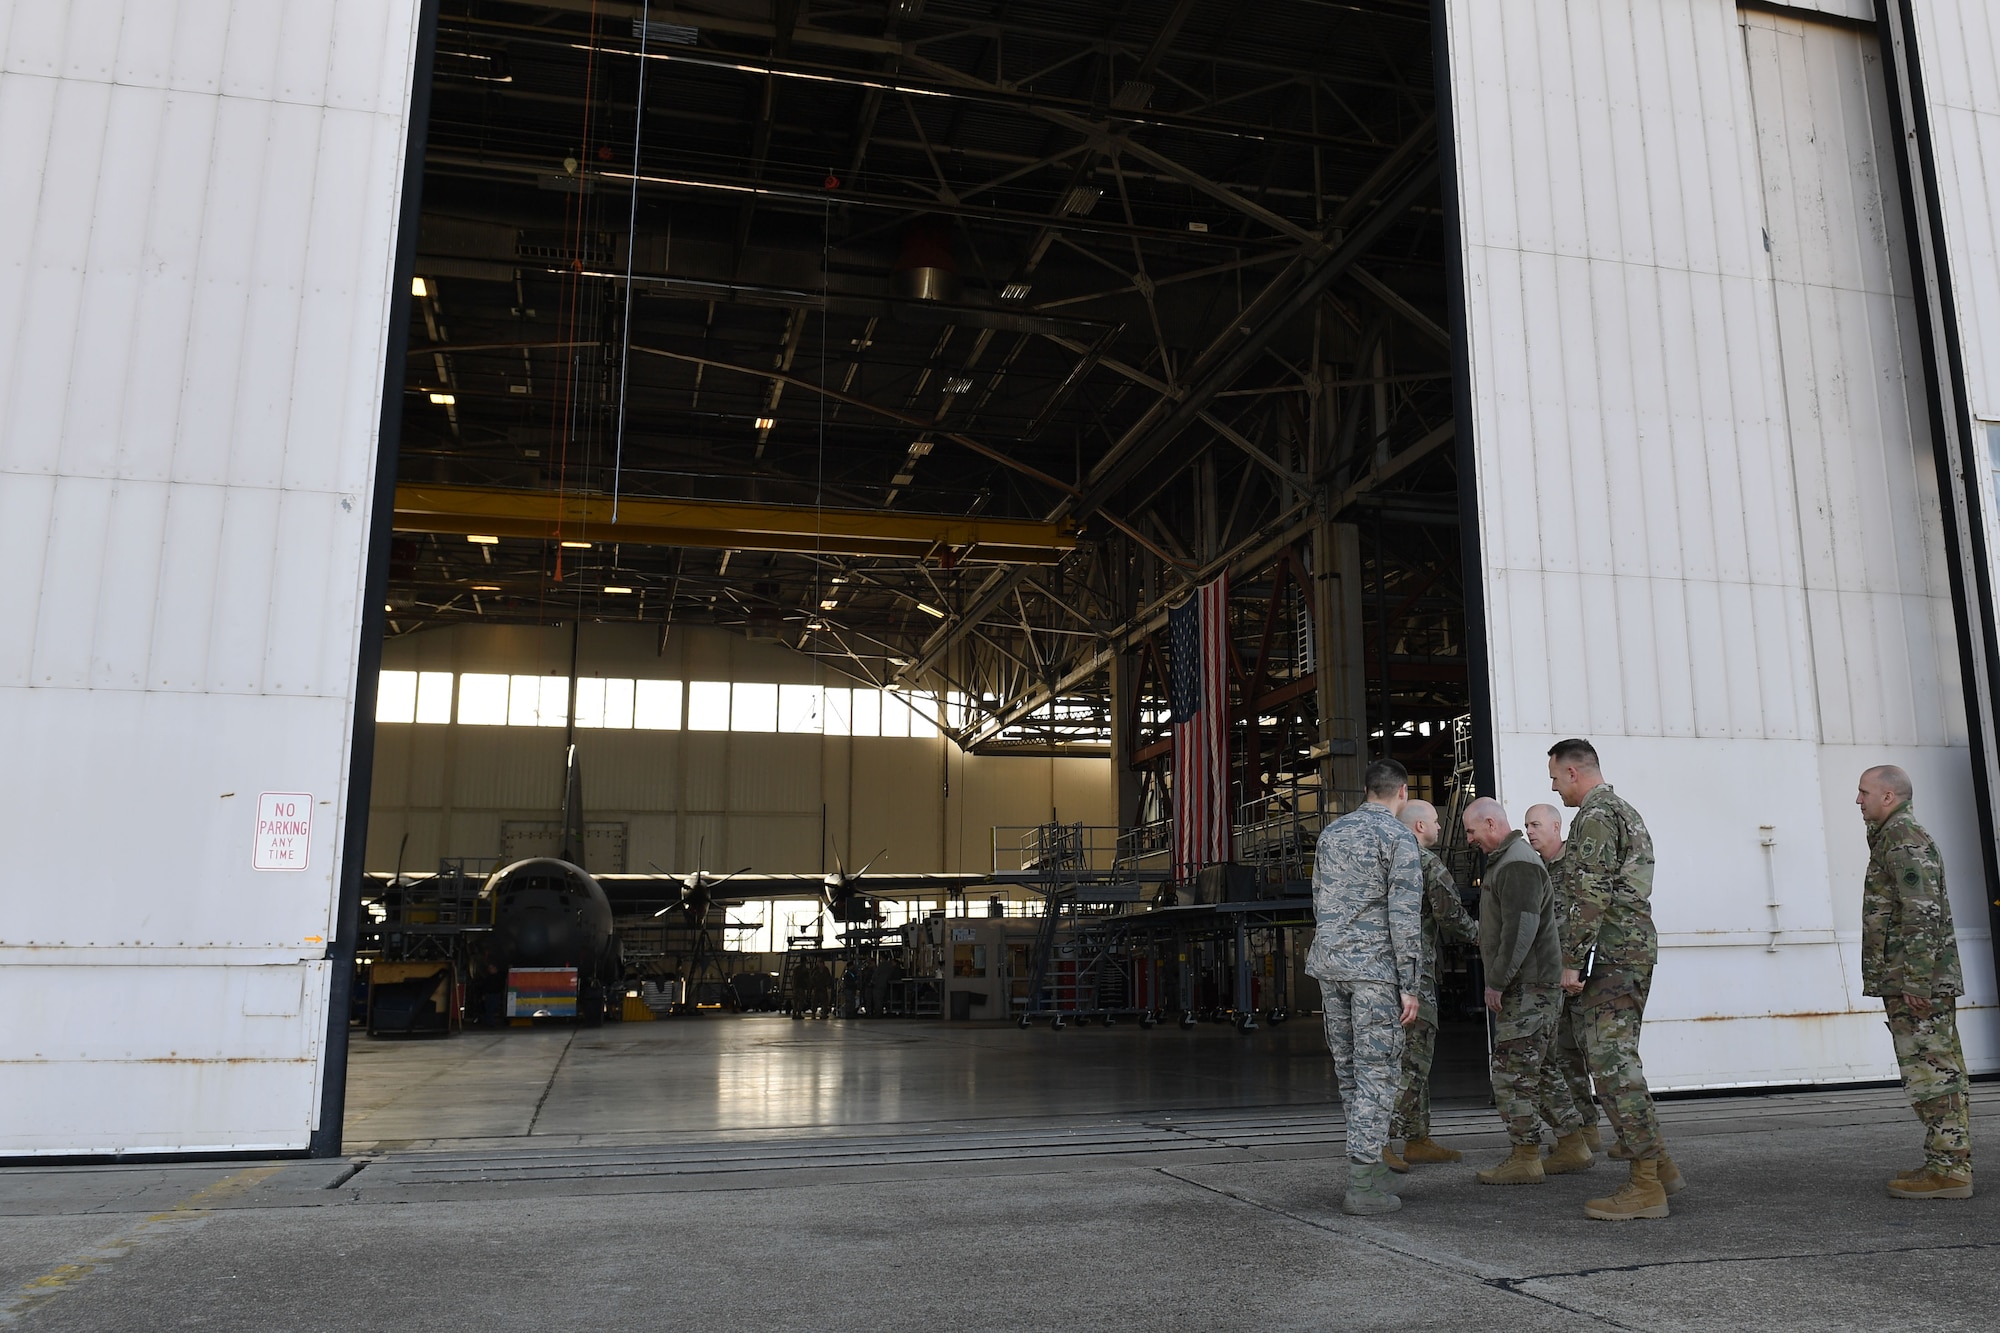 Men walk into a hangar.